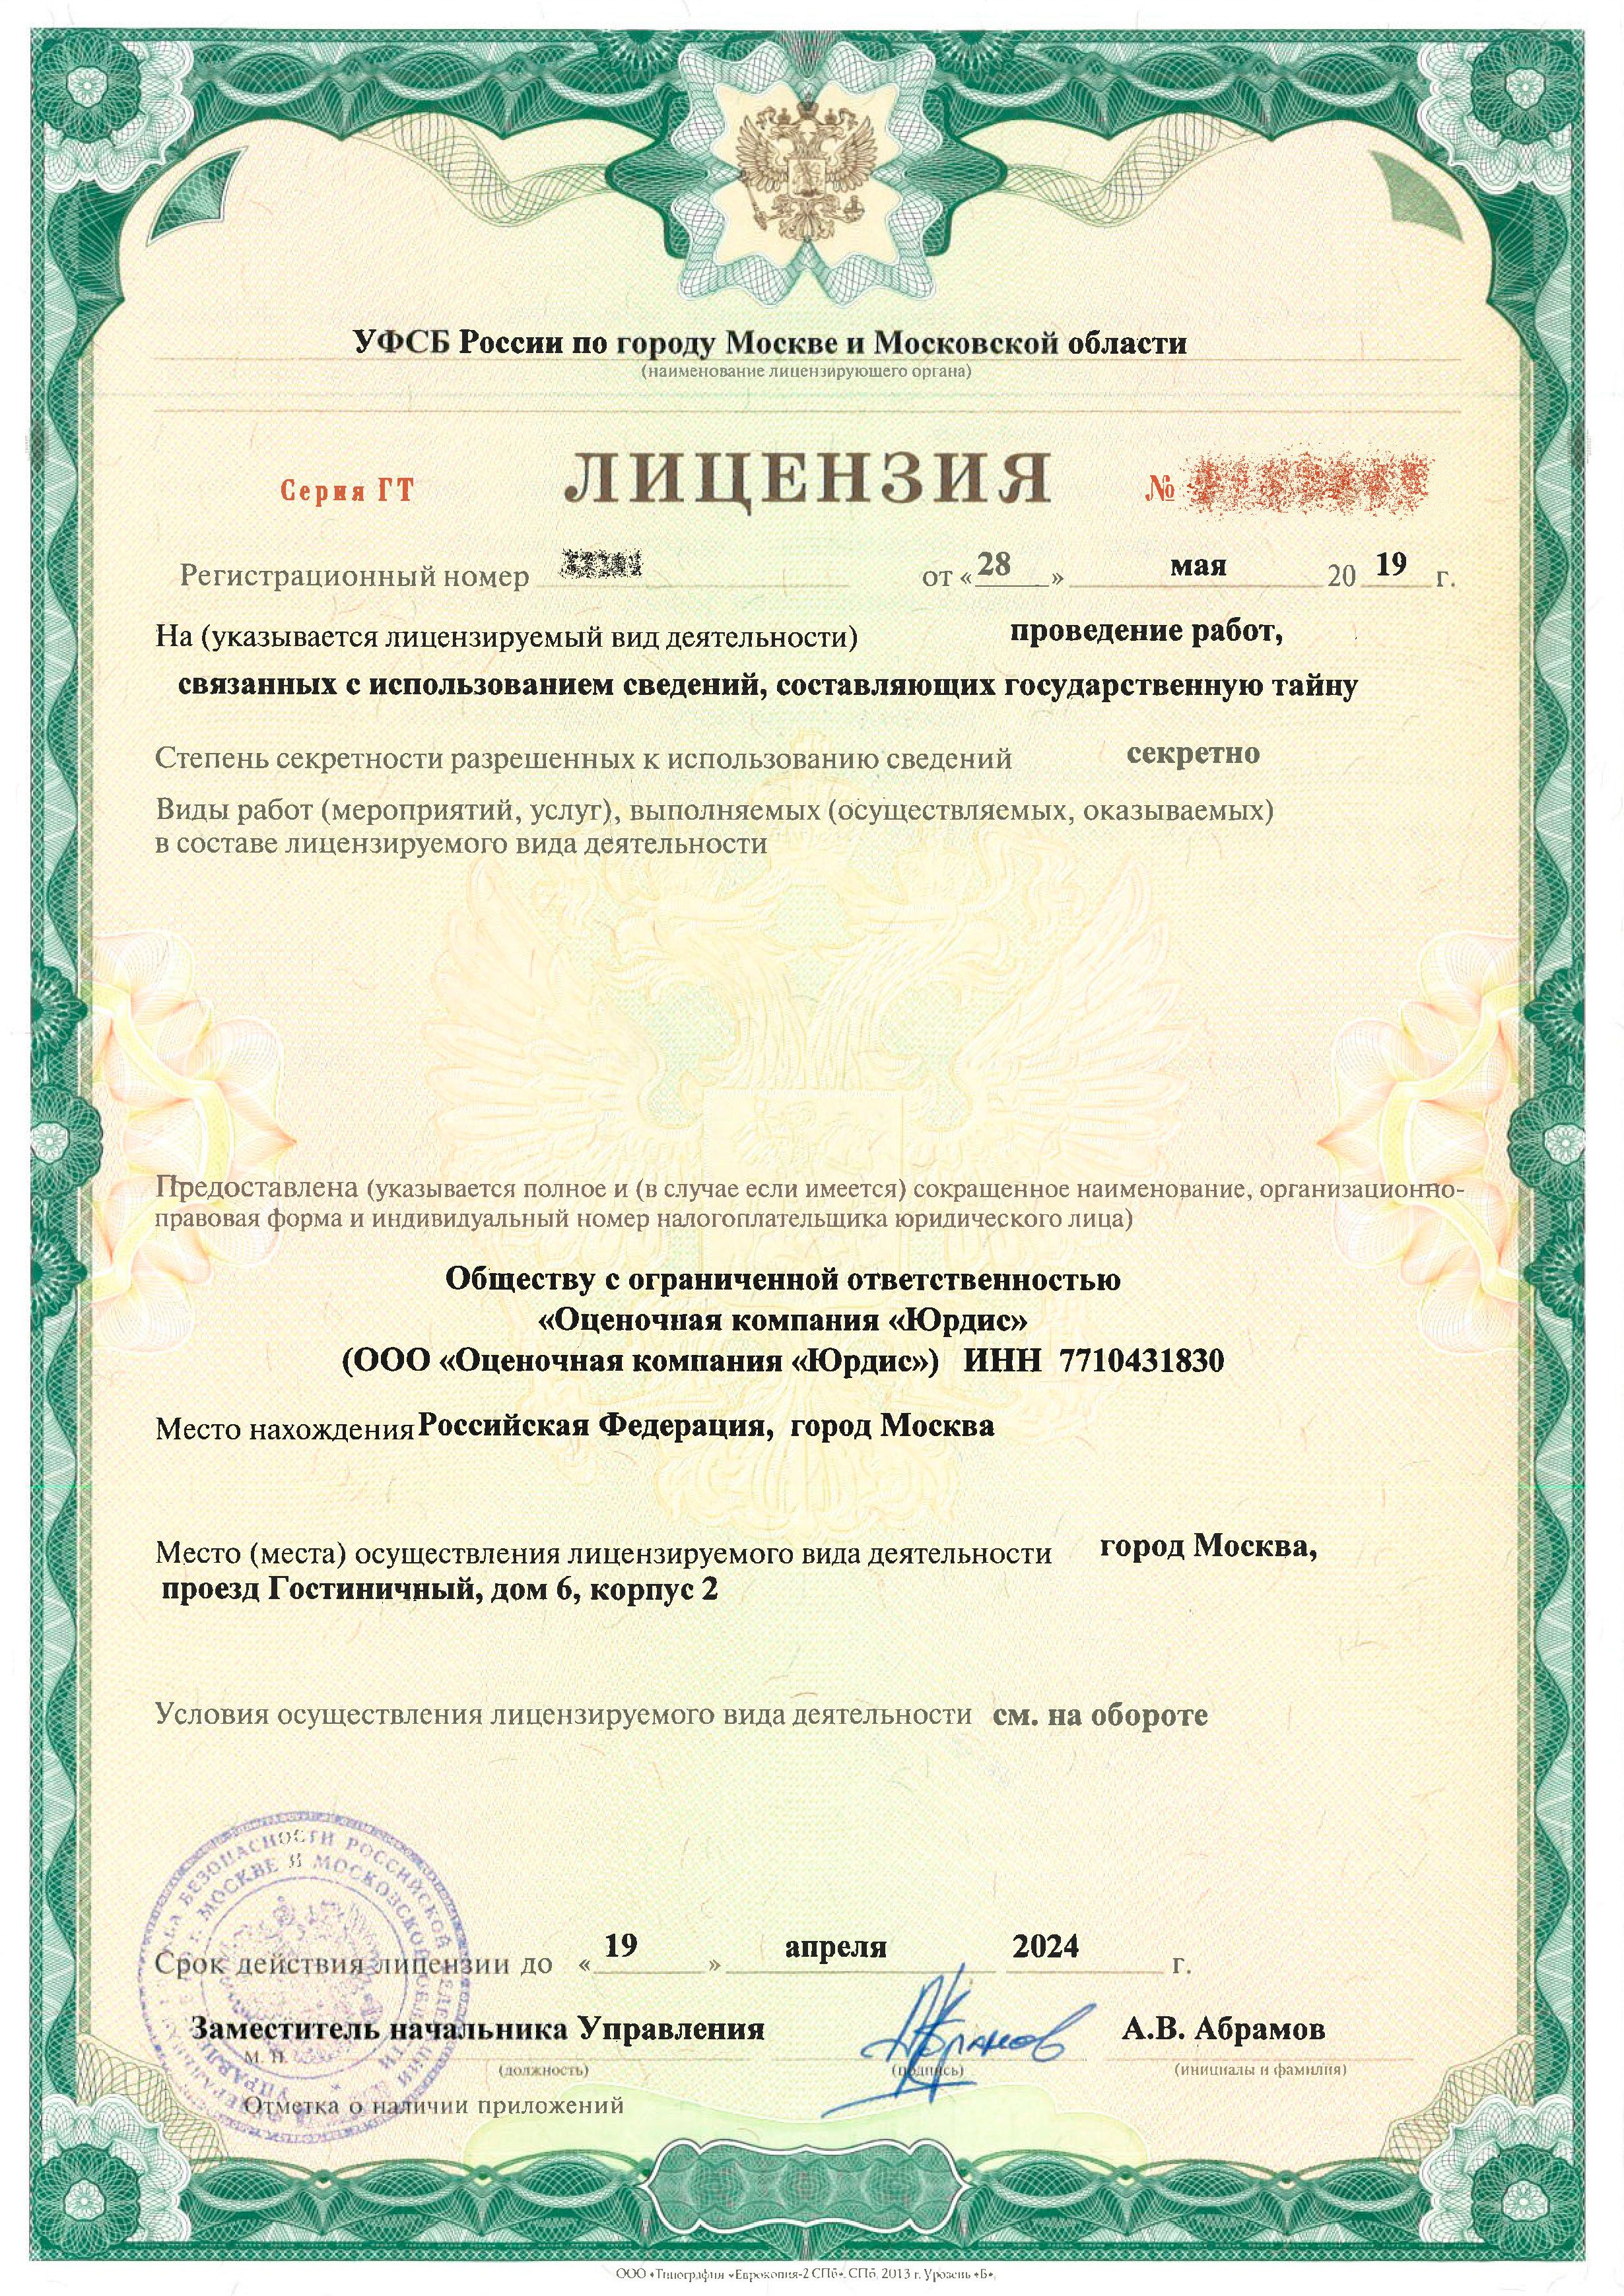 Получена лицензия ФСБ России на проведение работ связанных с государственную тайной